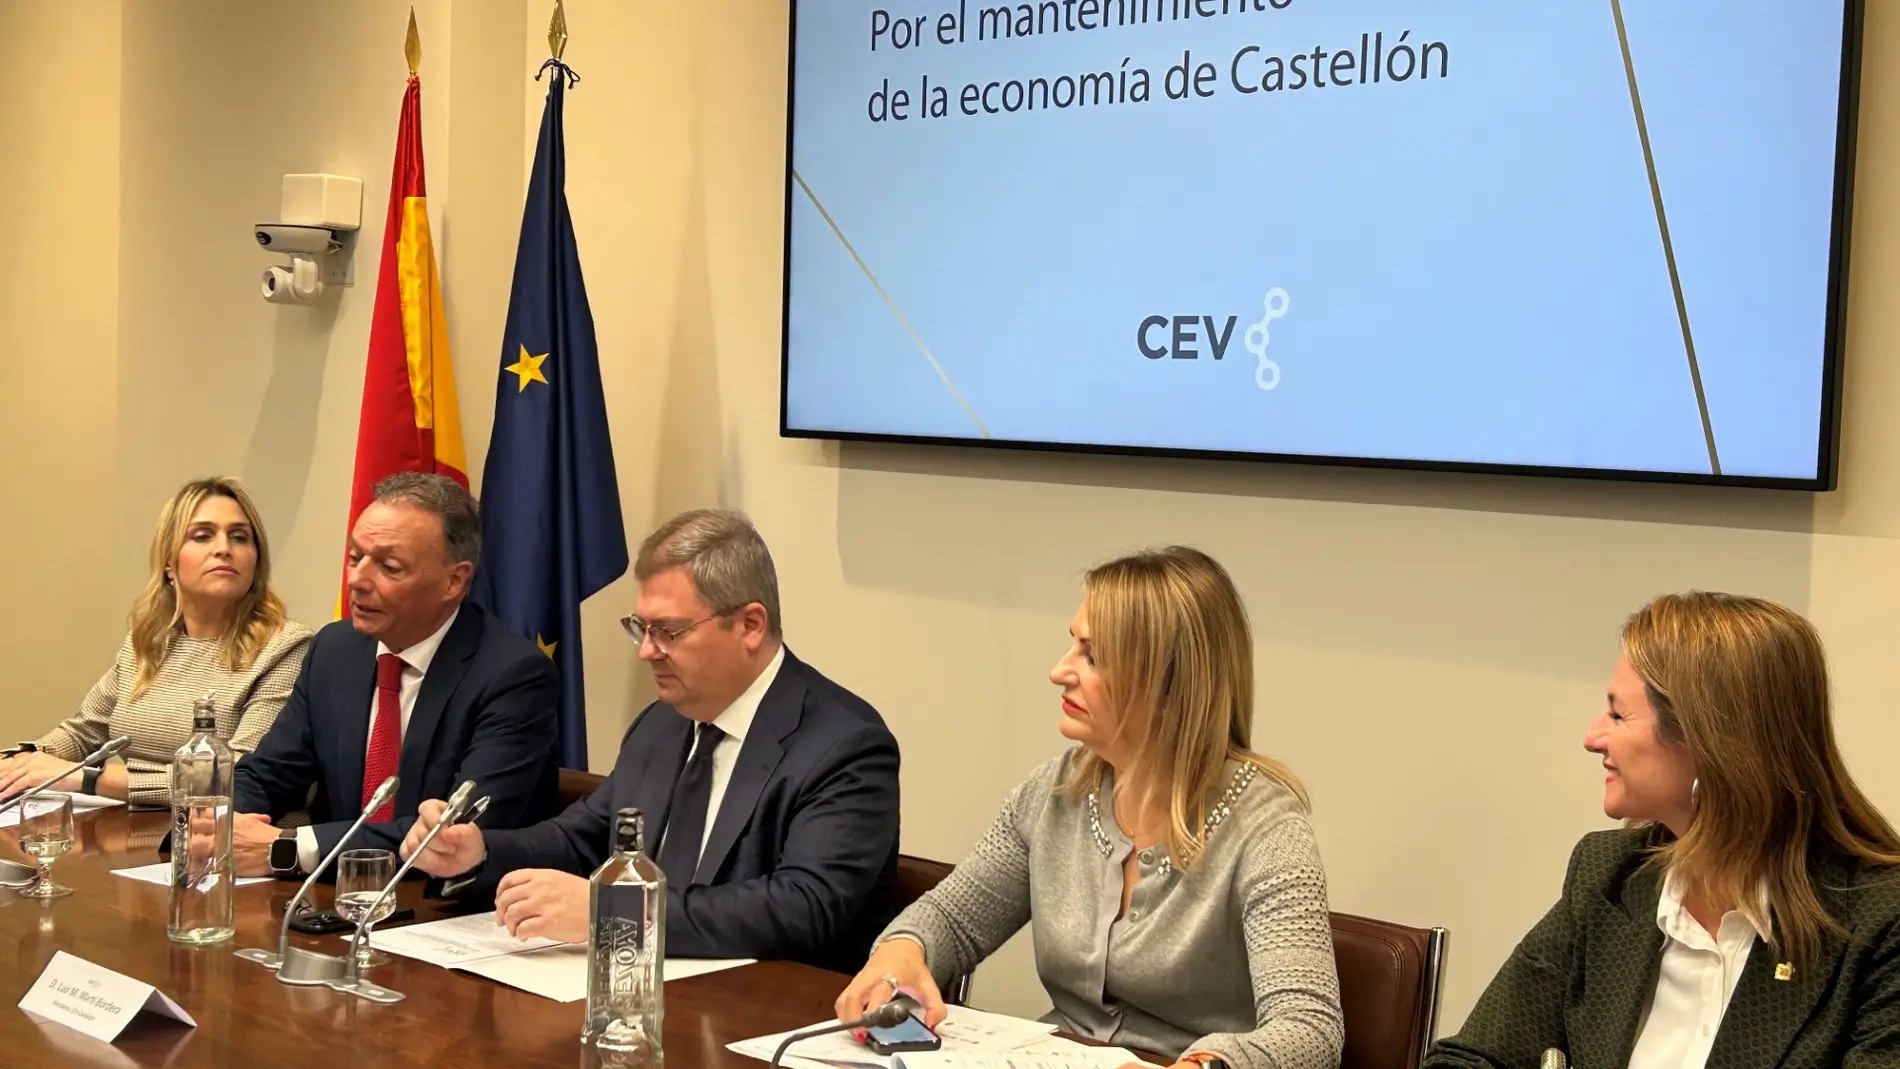 La CEV Castellón reclama “ayuda decidida y eficaz” al ejecutivo de Sánchez 